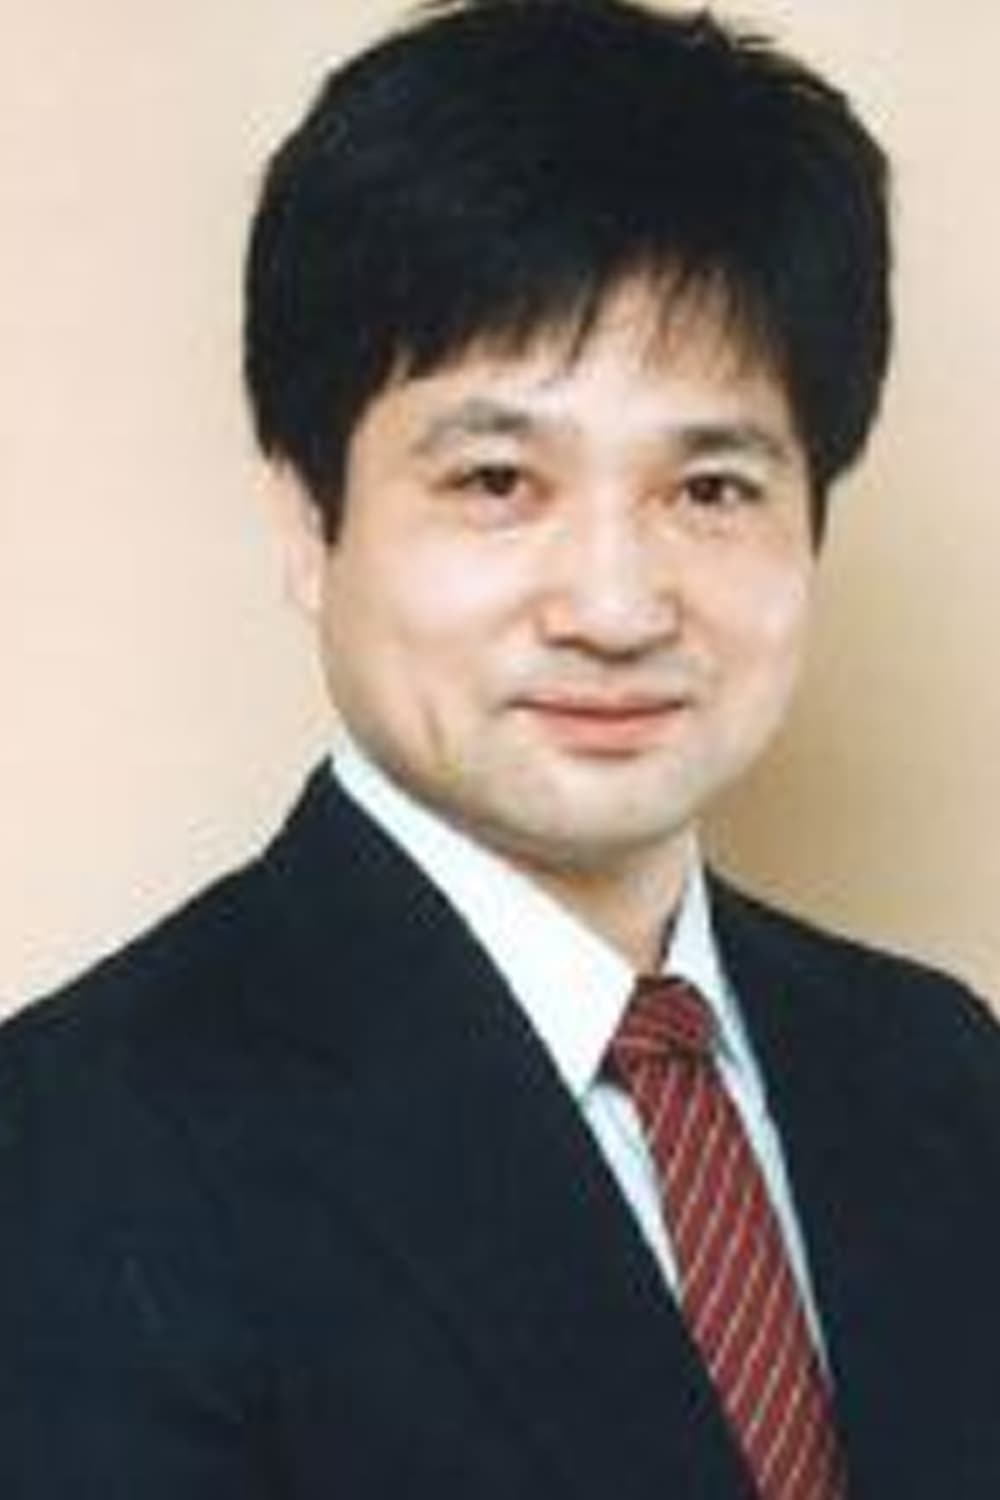 Junichi Sugawara | Politician A (voice)